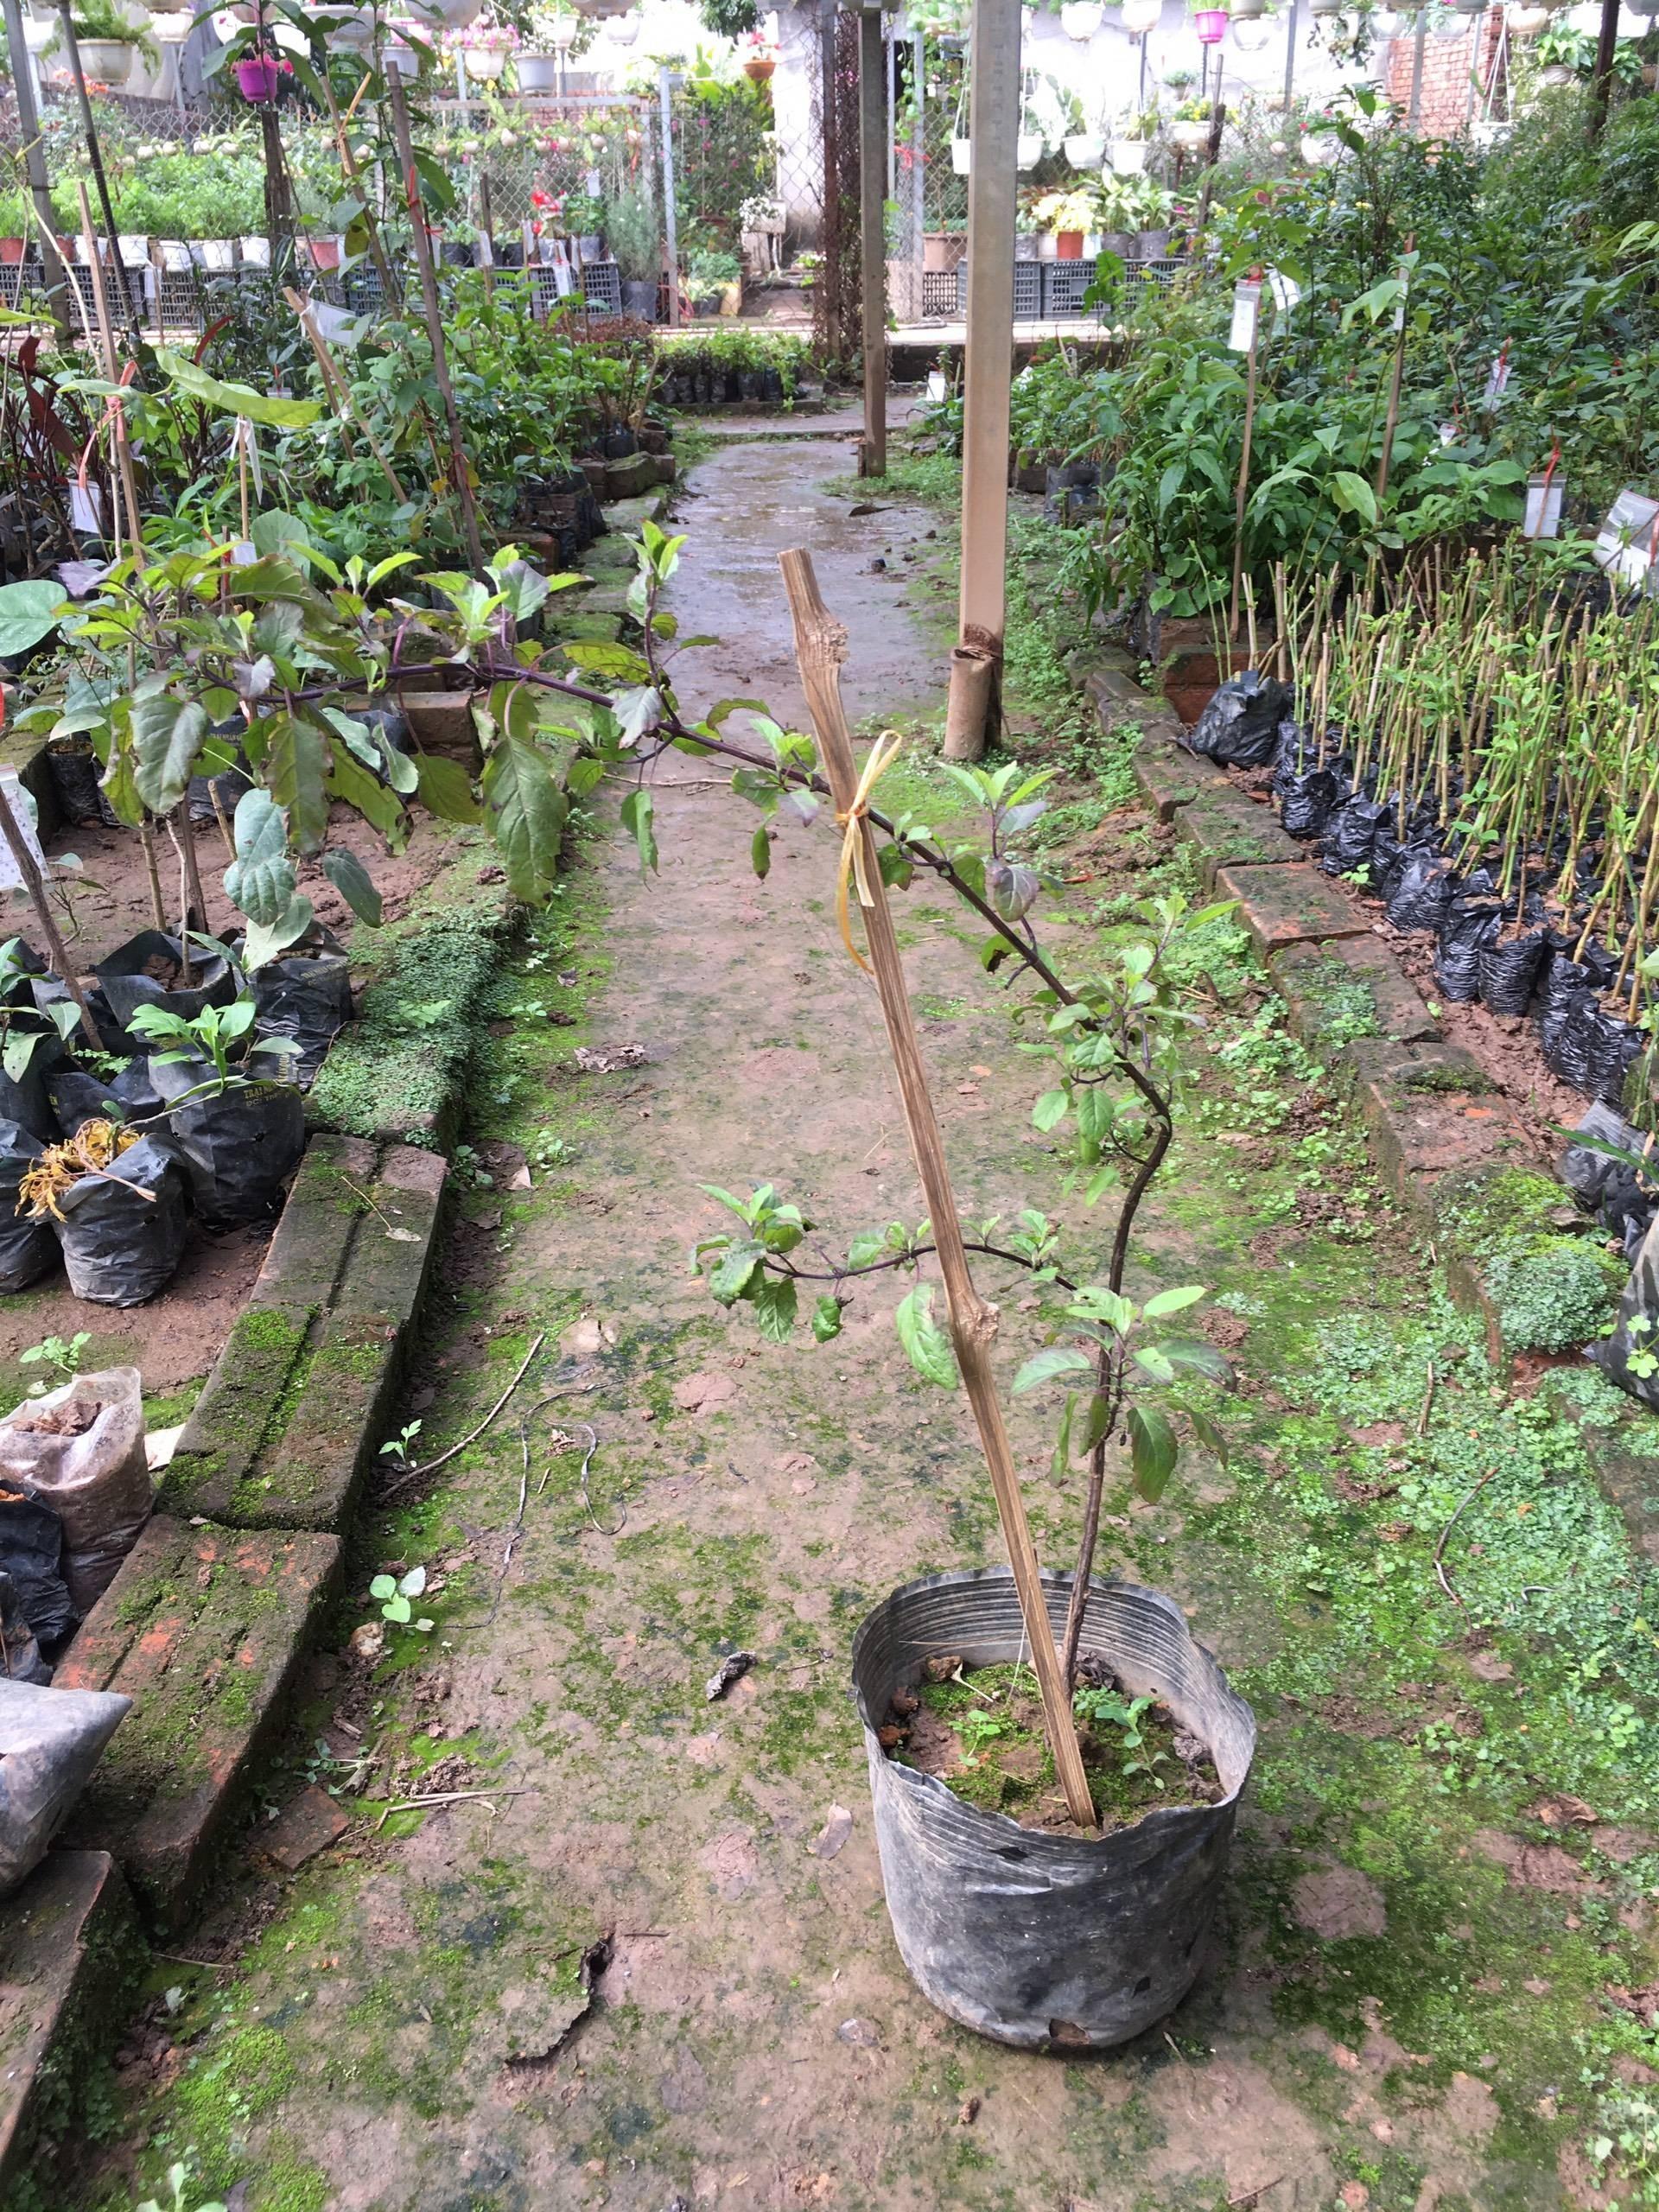 Hương nhu tía – Cây giống chuẩn gửi cây trong bầu